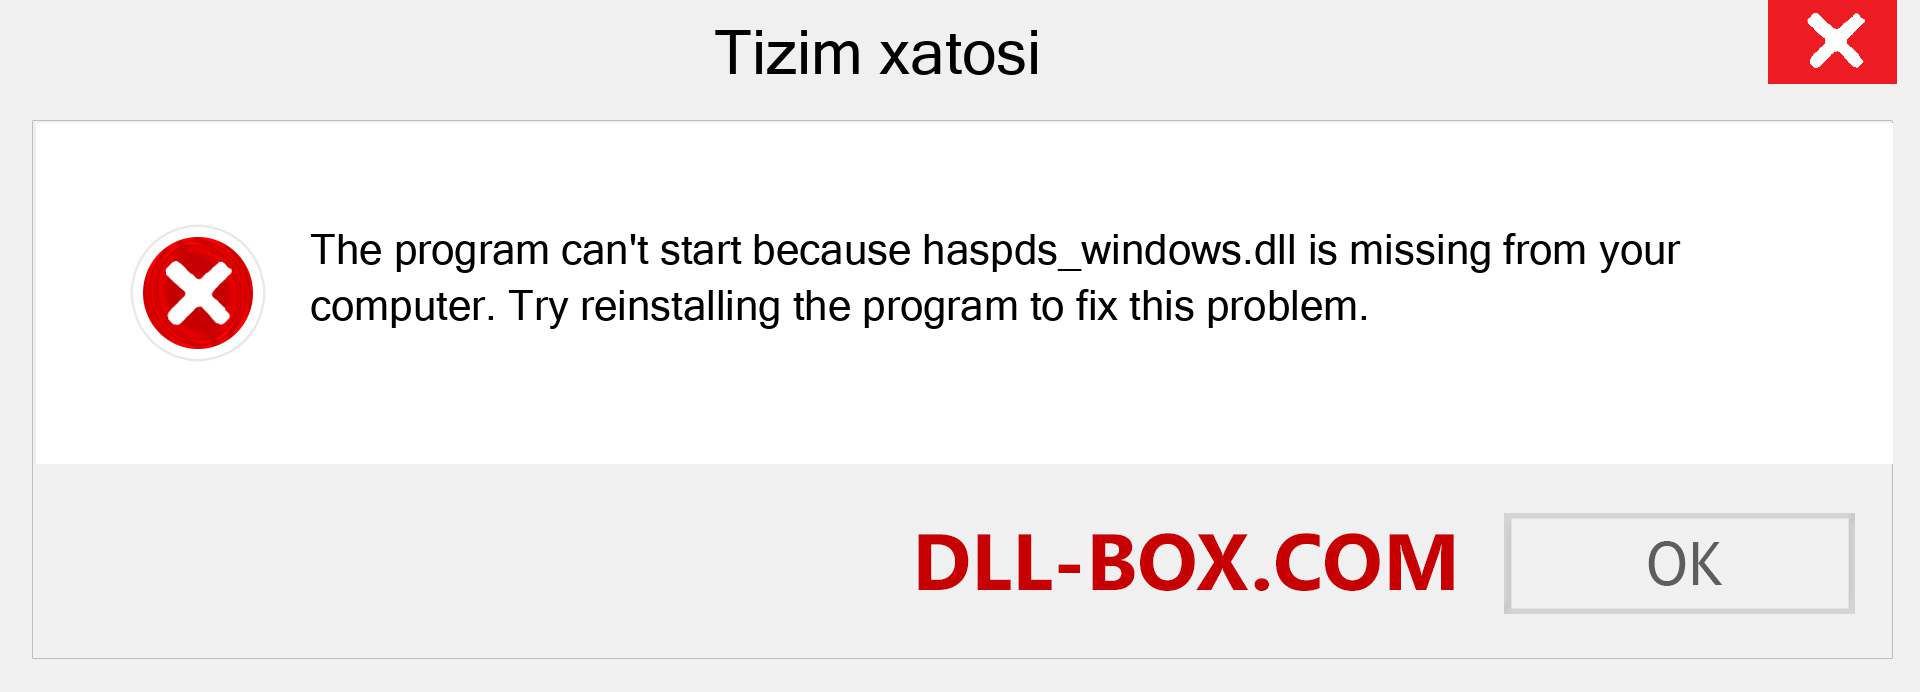 haspds_windows.dll fayli yo'qolganmi?. Windows 7, 8, 10 uchun yuklab olish - Windowsda haspds_windows dll etishmayotgan xatoni tuzating, rasmlar, rasmlar